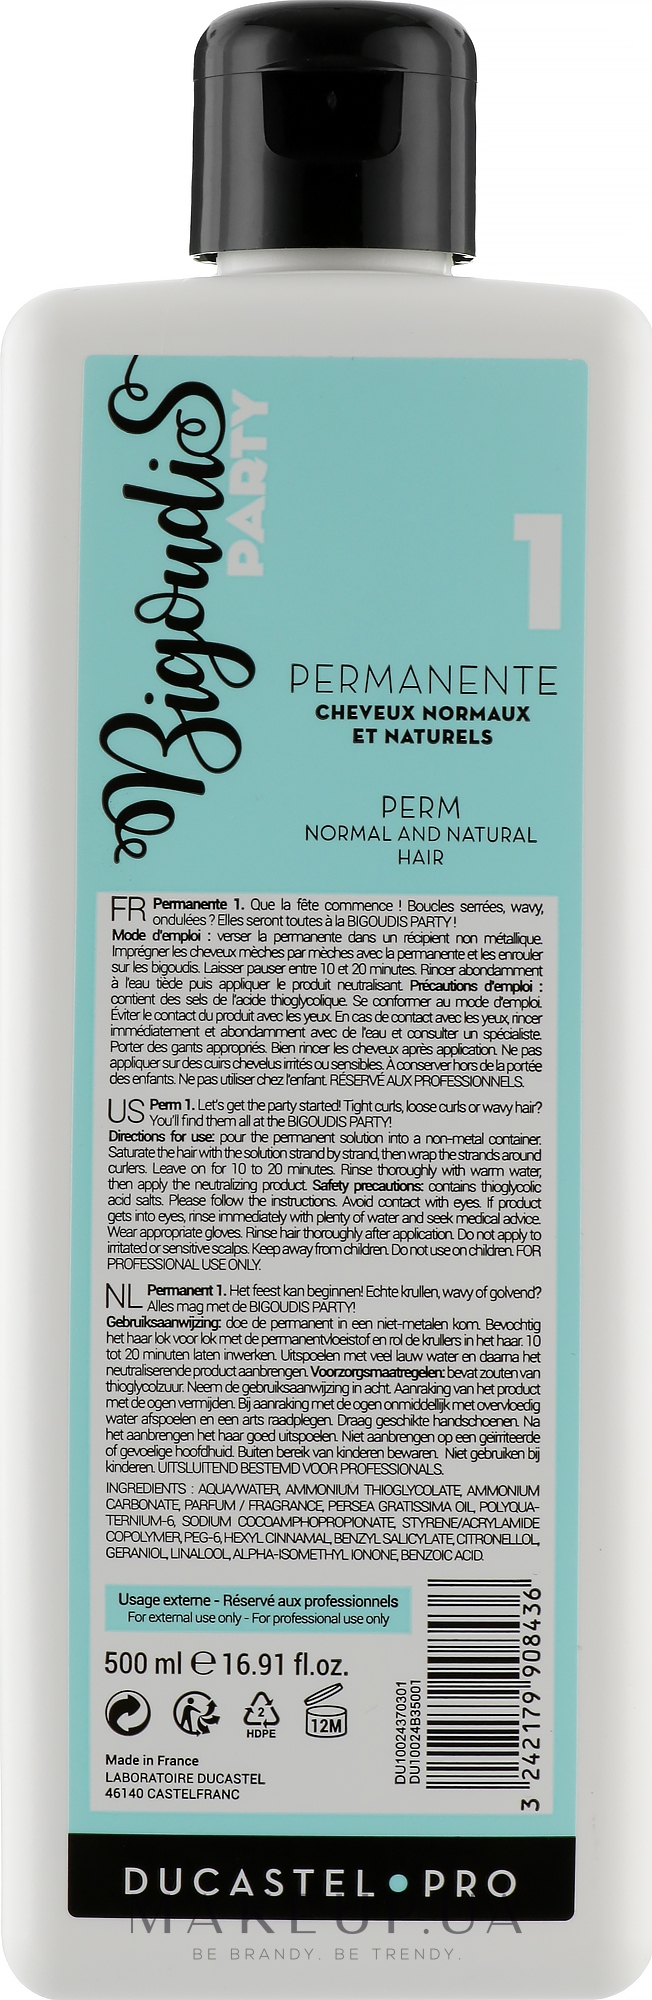 Жидкость для завивки натуральных волос - Laboratoire Ducastel Subtil Permanent №1 — фото 500ml